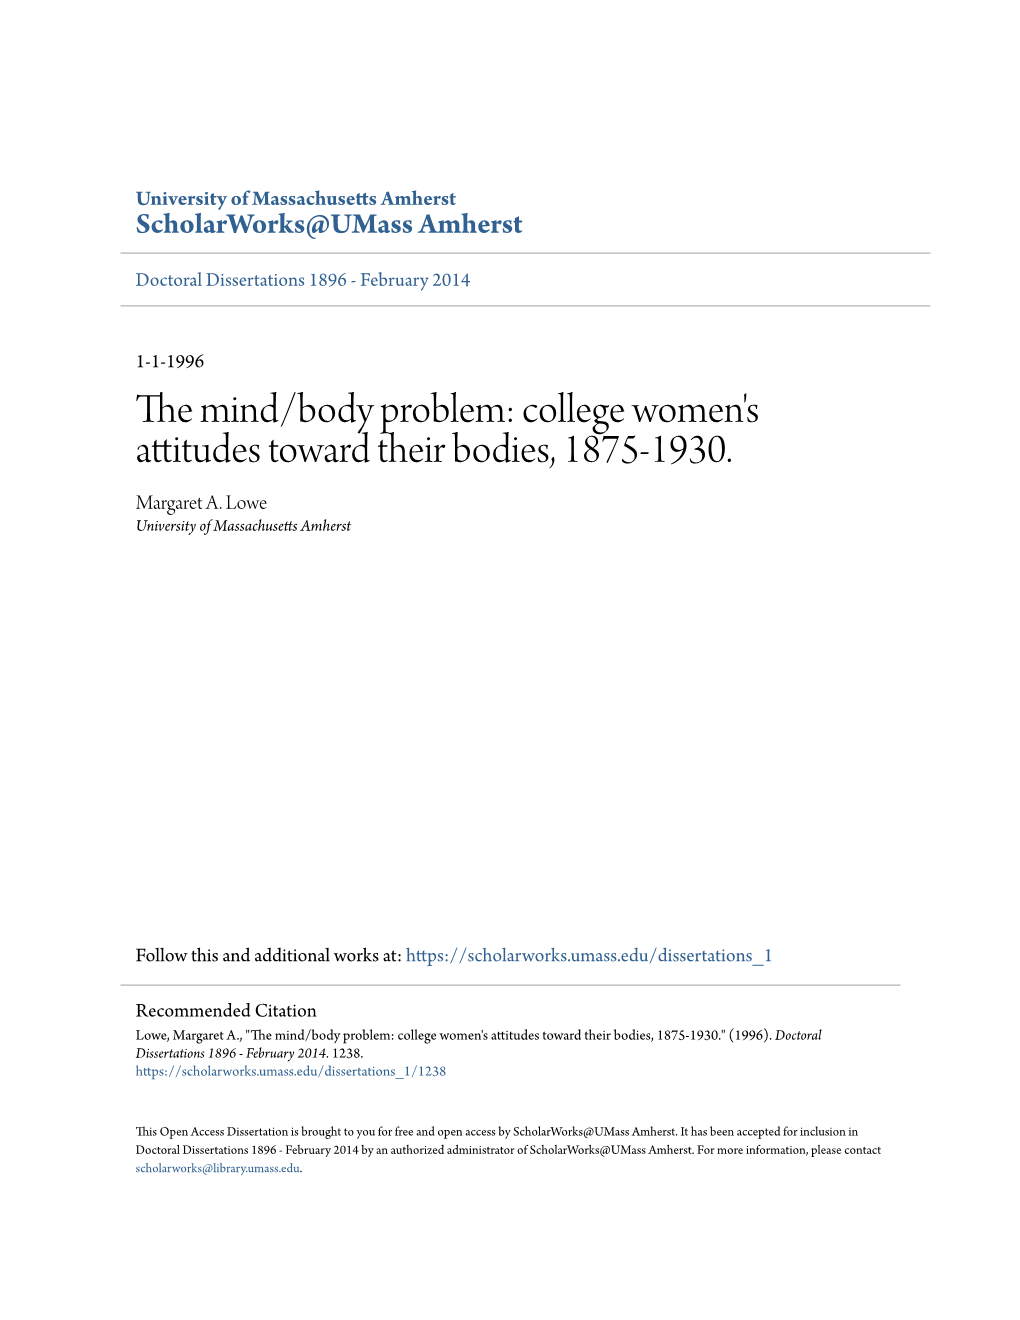 College Women's Attitudes Toward Their Bodies, 1875-1930. Margaret A